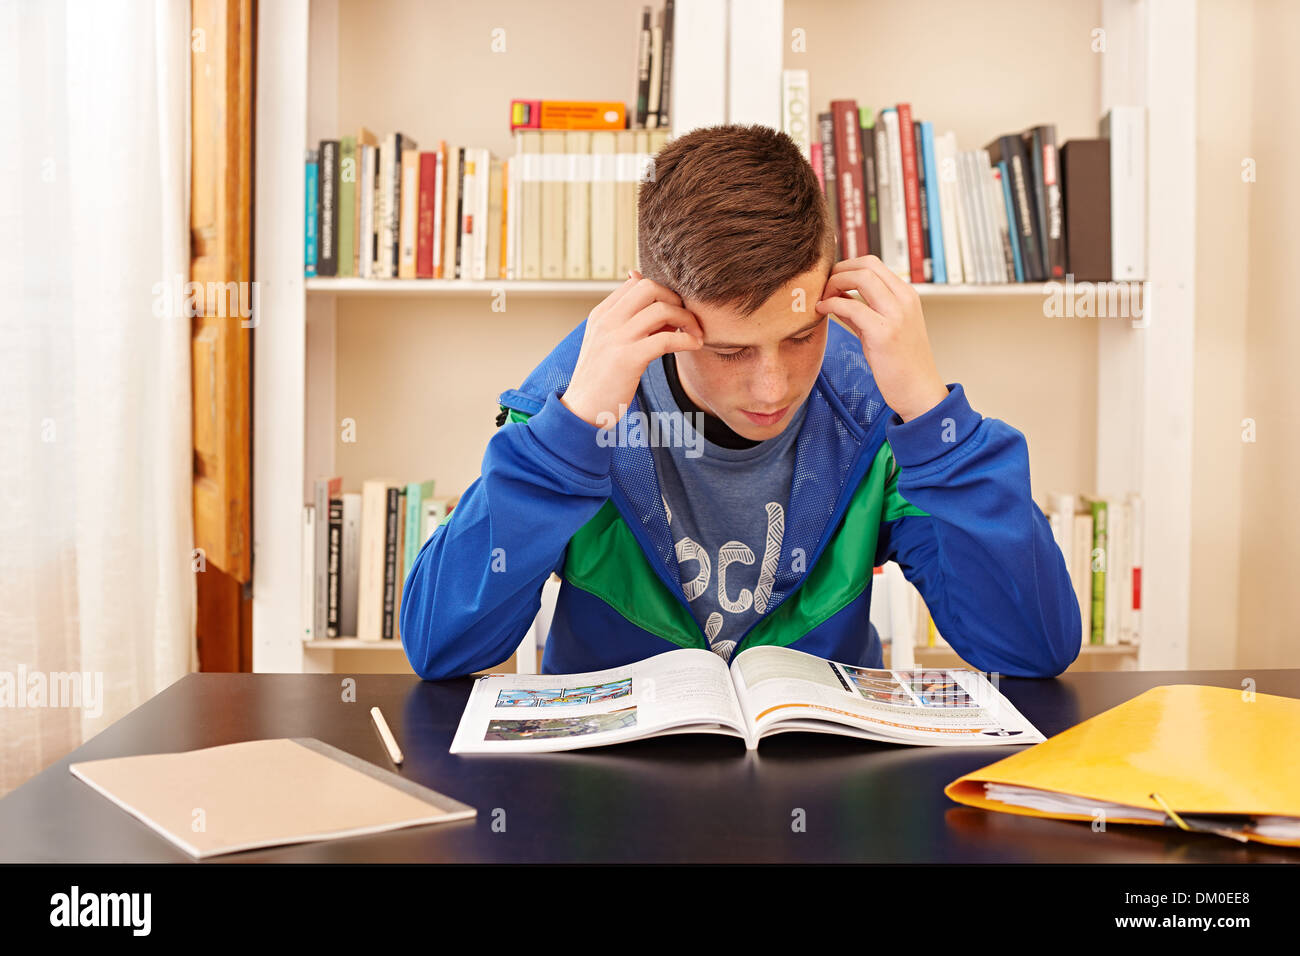 Männlichen Teenager konzentriert studieren in einem Schreibtisch Stockfoto